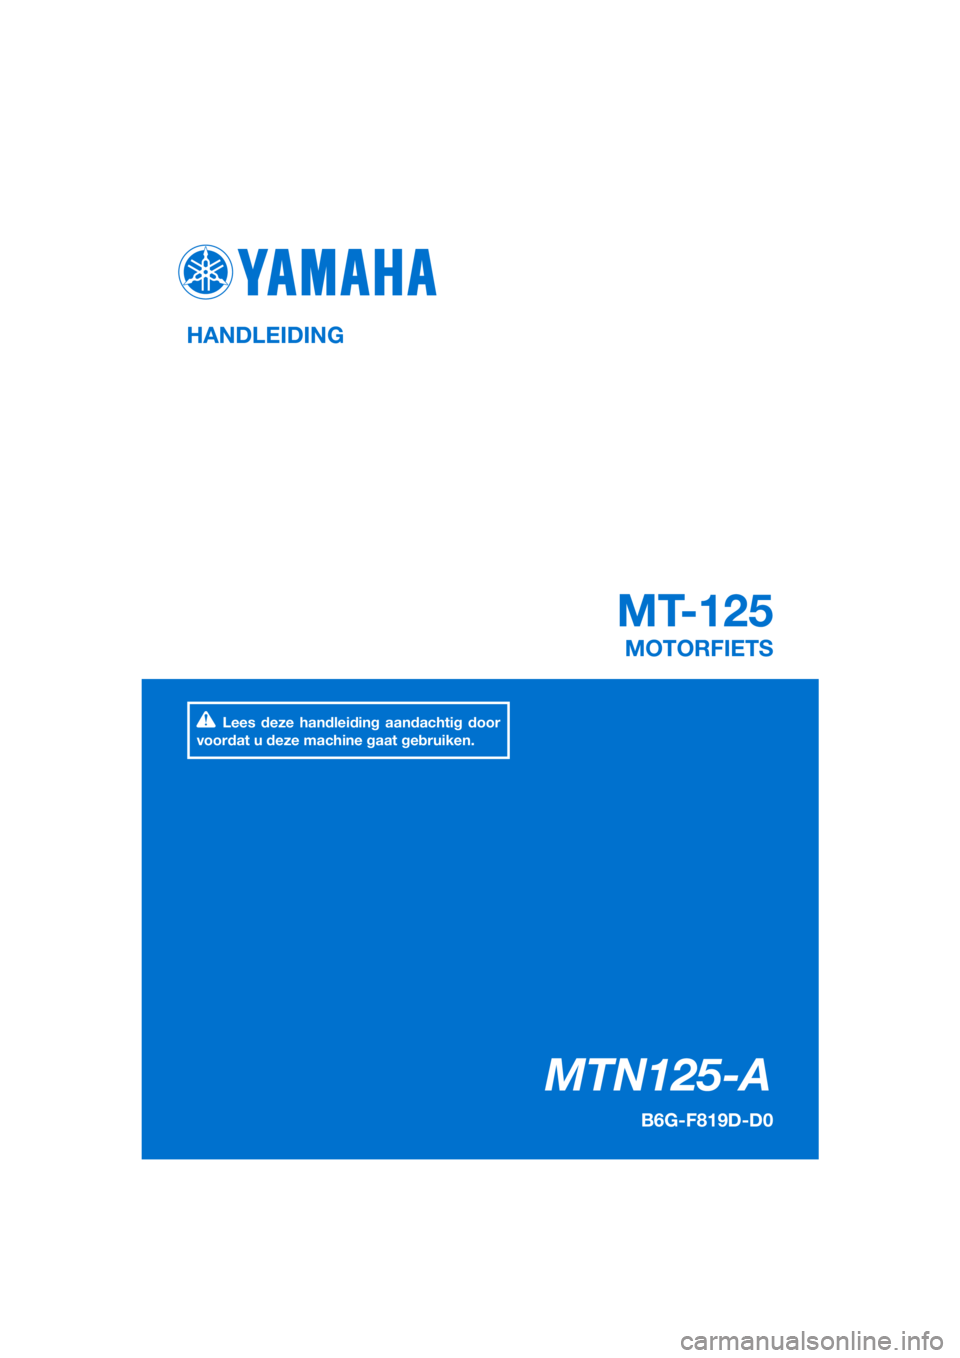 YAMAHA MT-125 2020  Instructieboekje (in Dutch) PANTONE285C
MTN125-A
MT-125
HANDLEIDING
B6G-F819D-D0
MOTORFIETS
Lees deze handleiding aandachtig door 
voordat u deze machine gaat gebruiken.
[Dutch  (D)] 